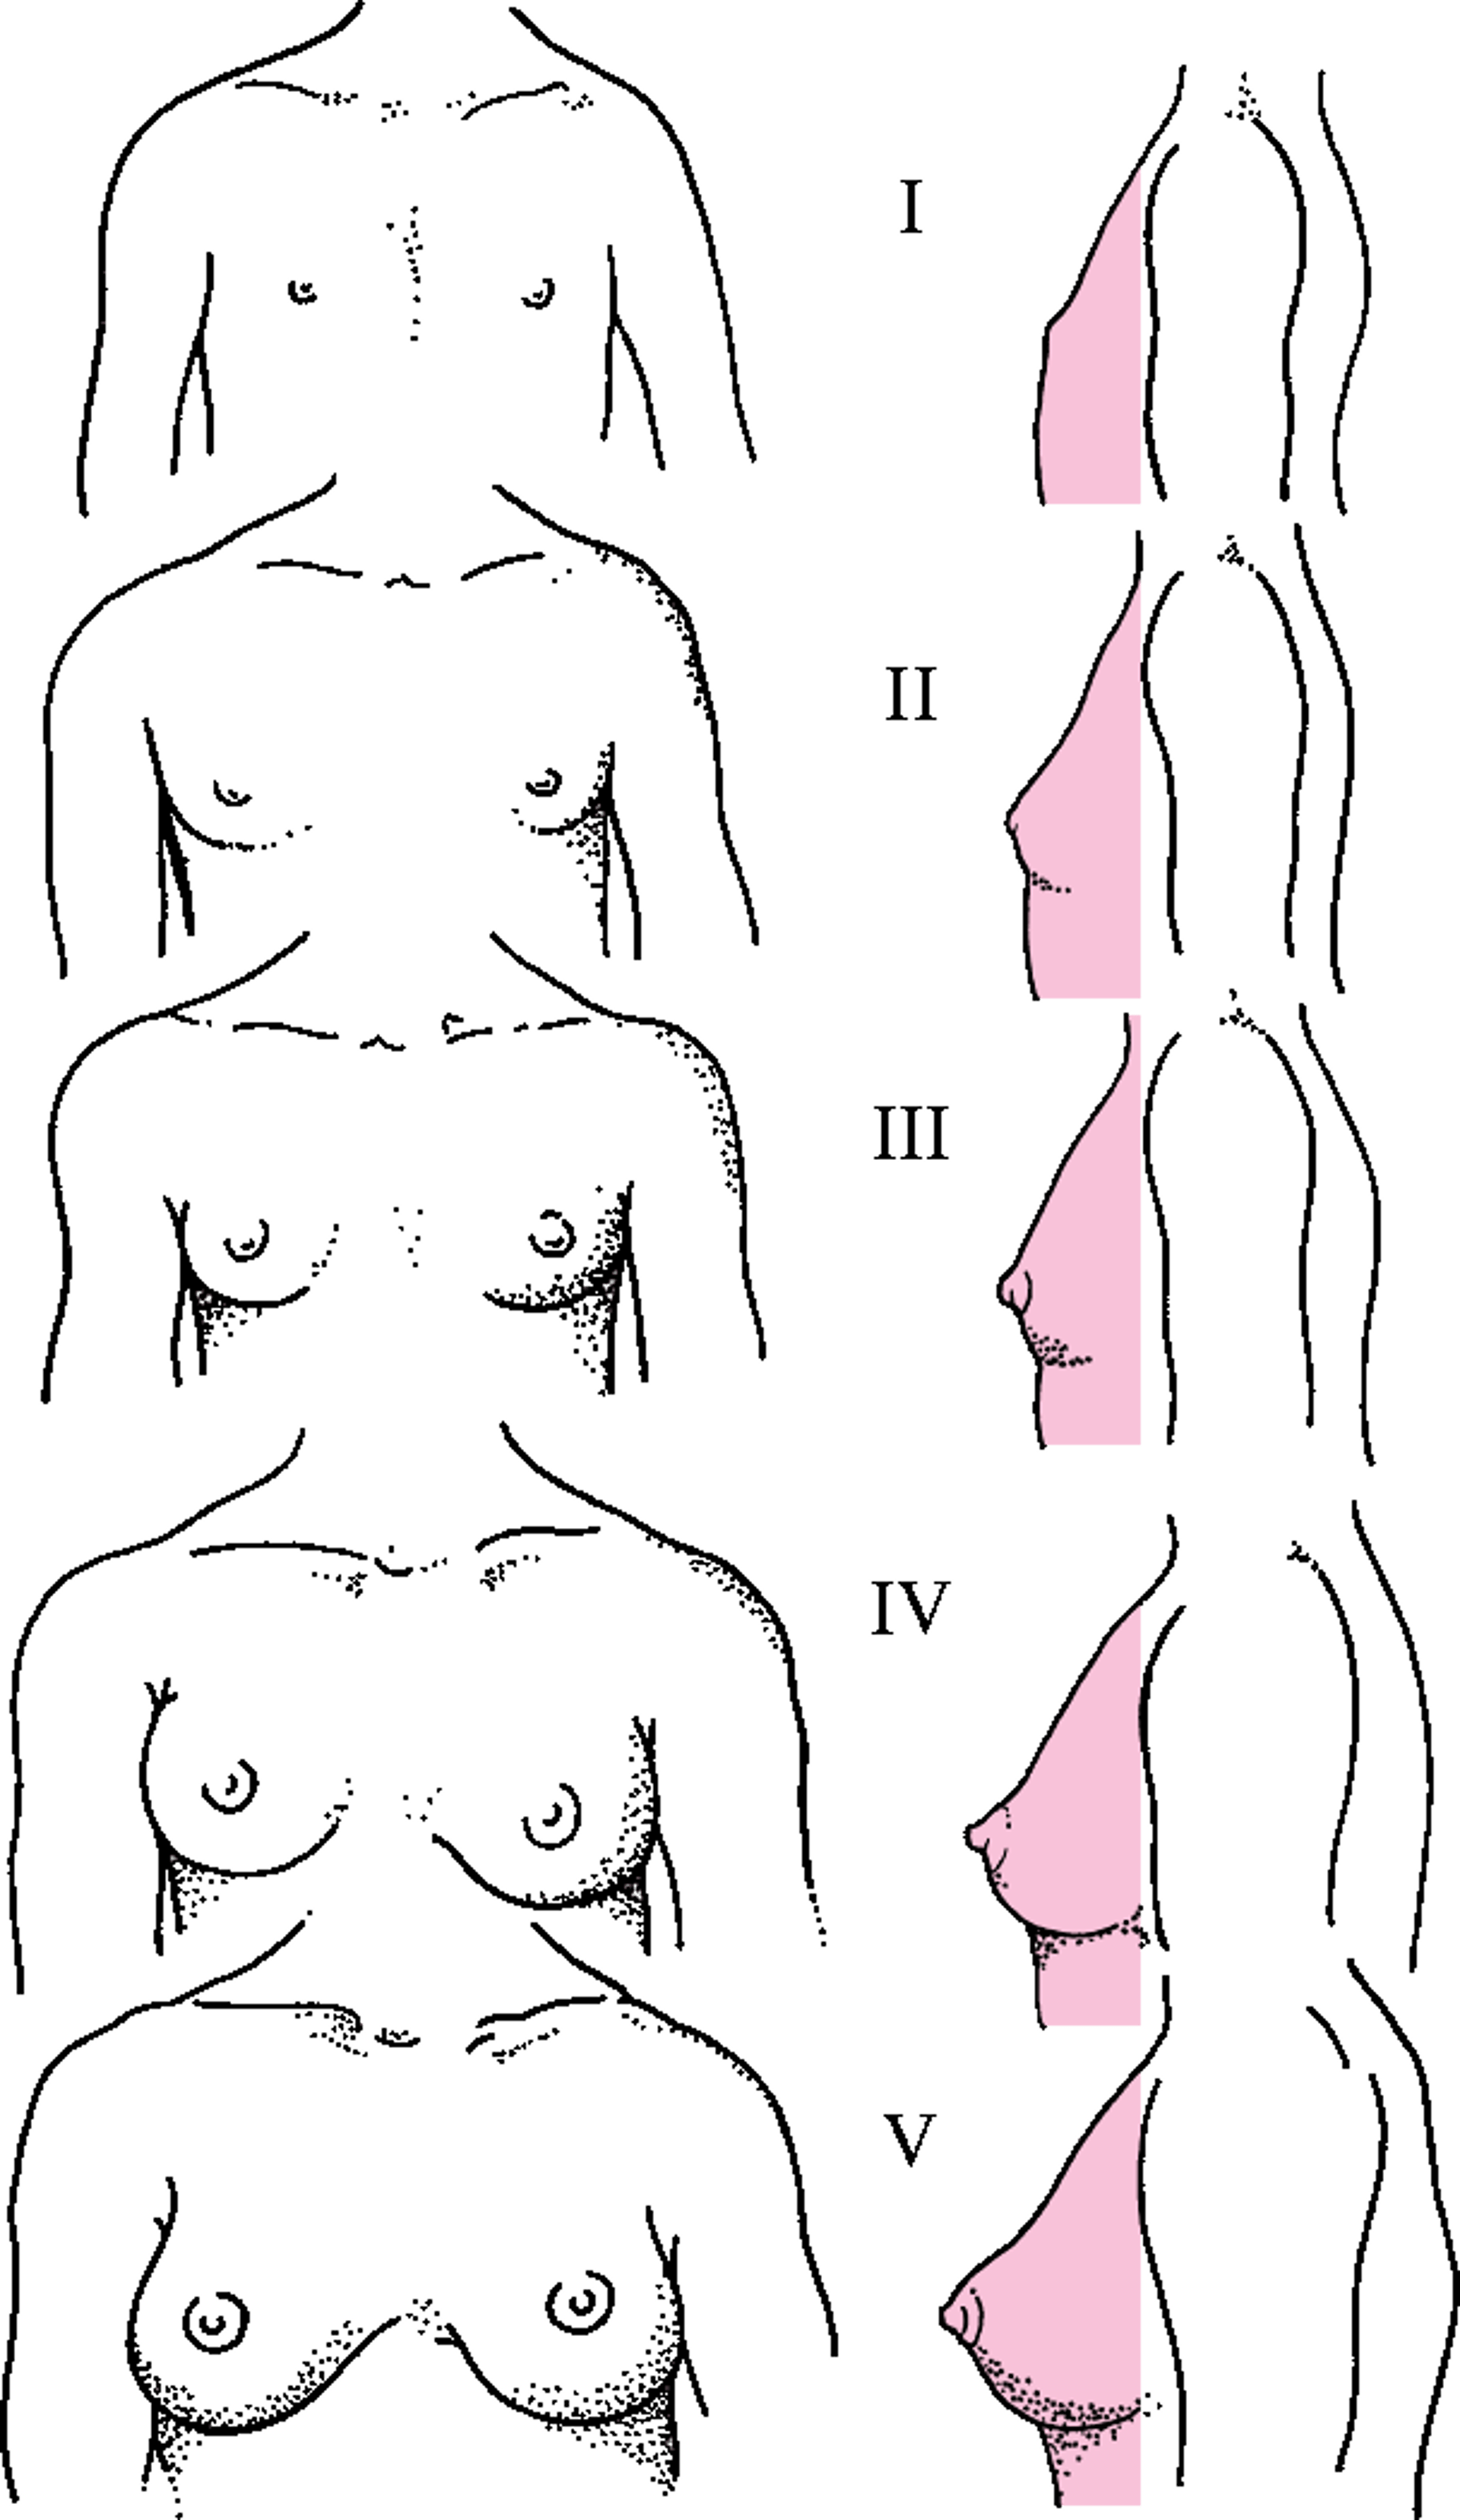 Biểu đồ mô tả các giai đoạn Tanner từ I đến V đối với sự phát triển tuyến vú.